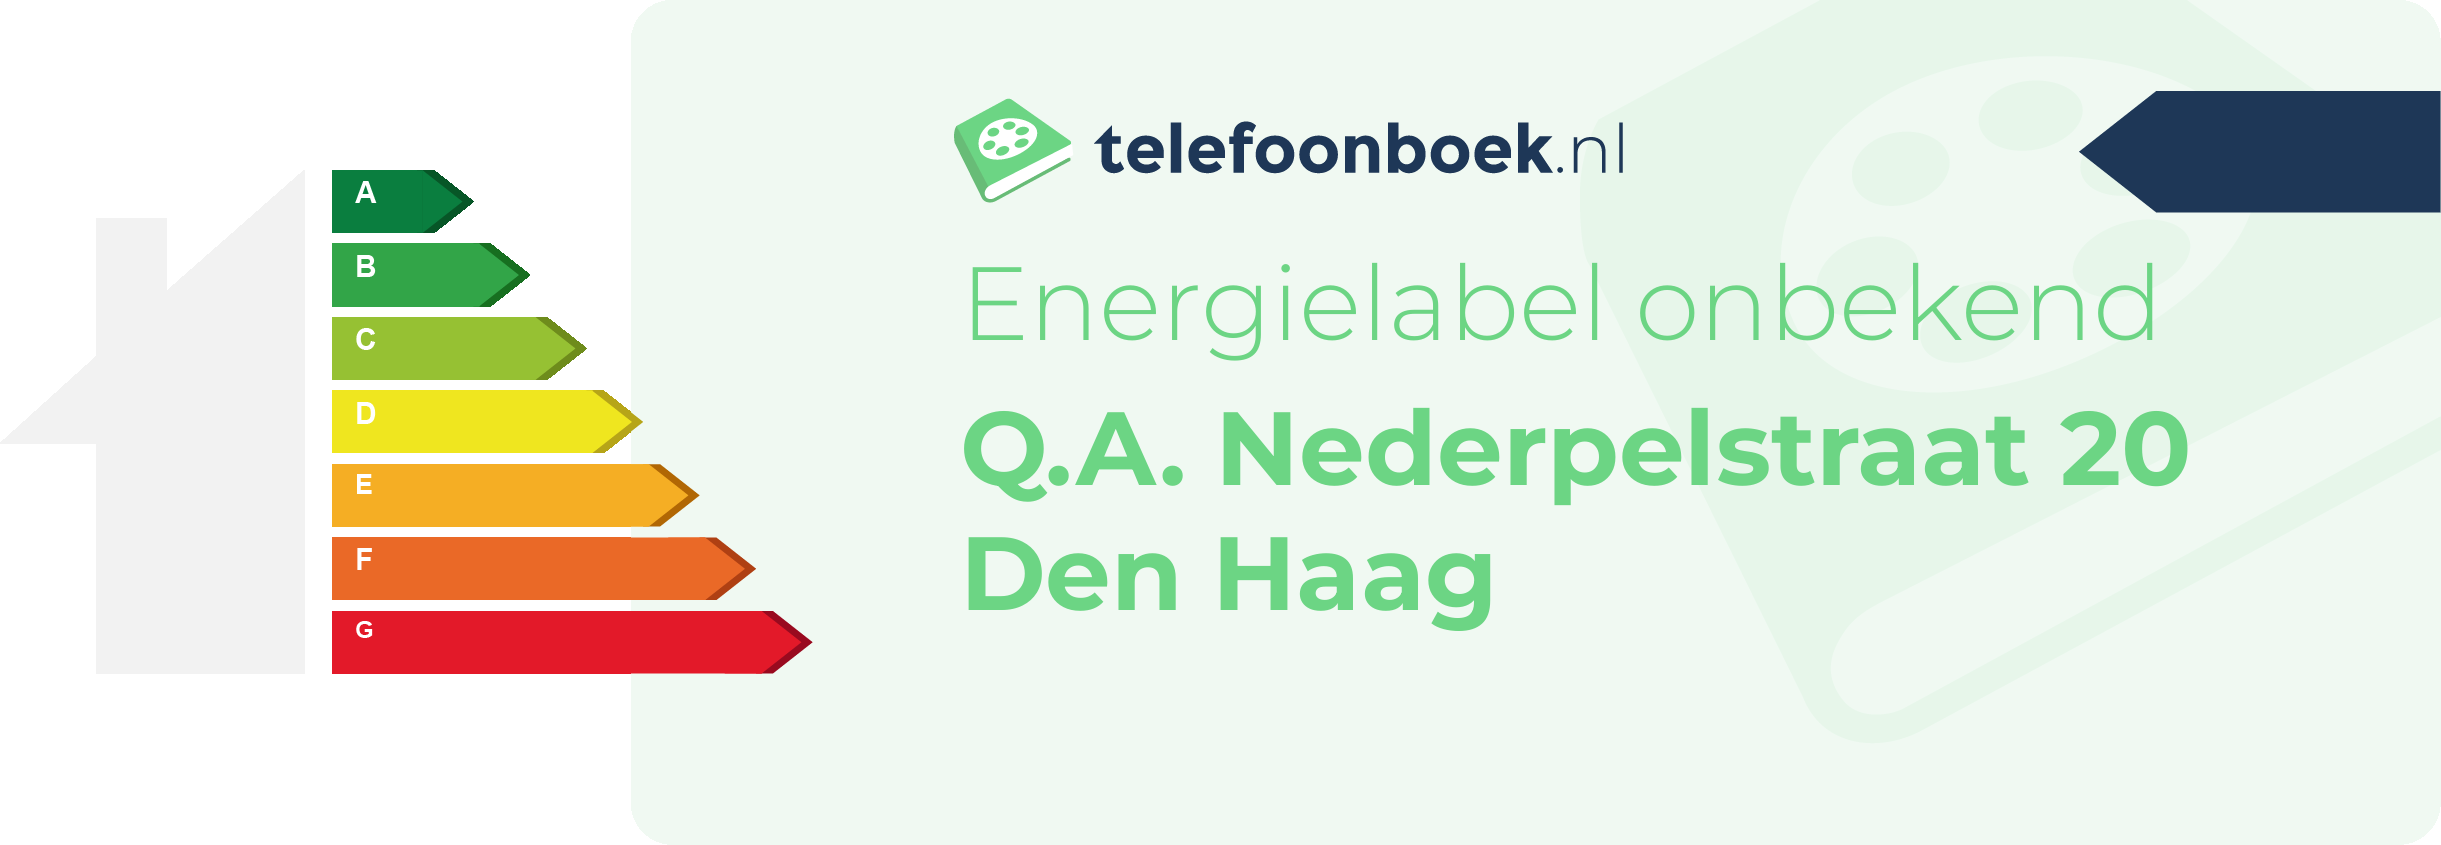 Energielabel Q.A. Nederpelstraat 20 Den Haag